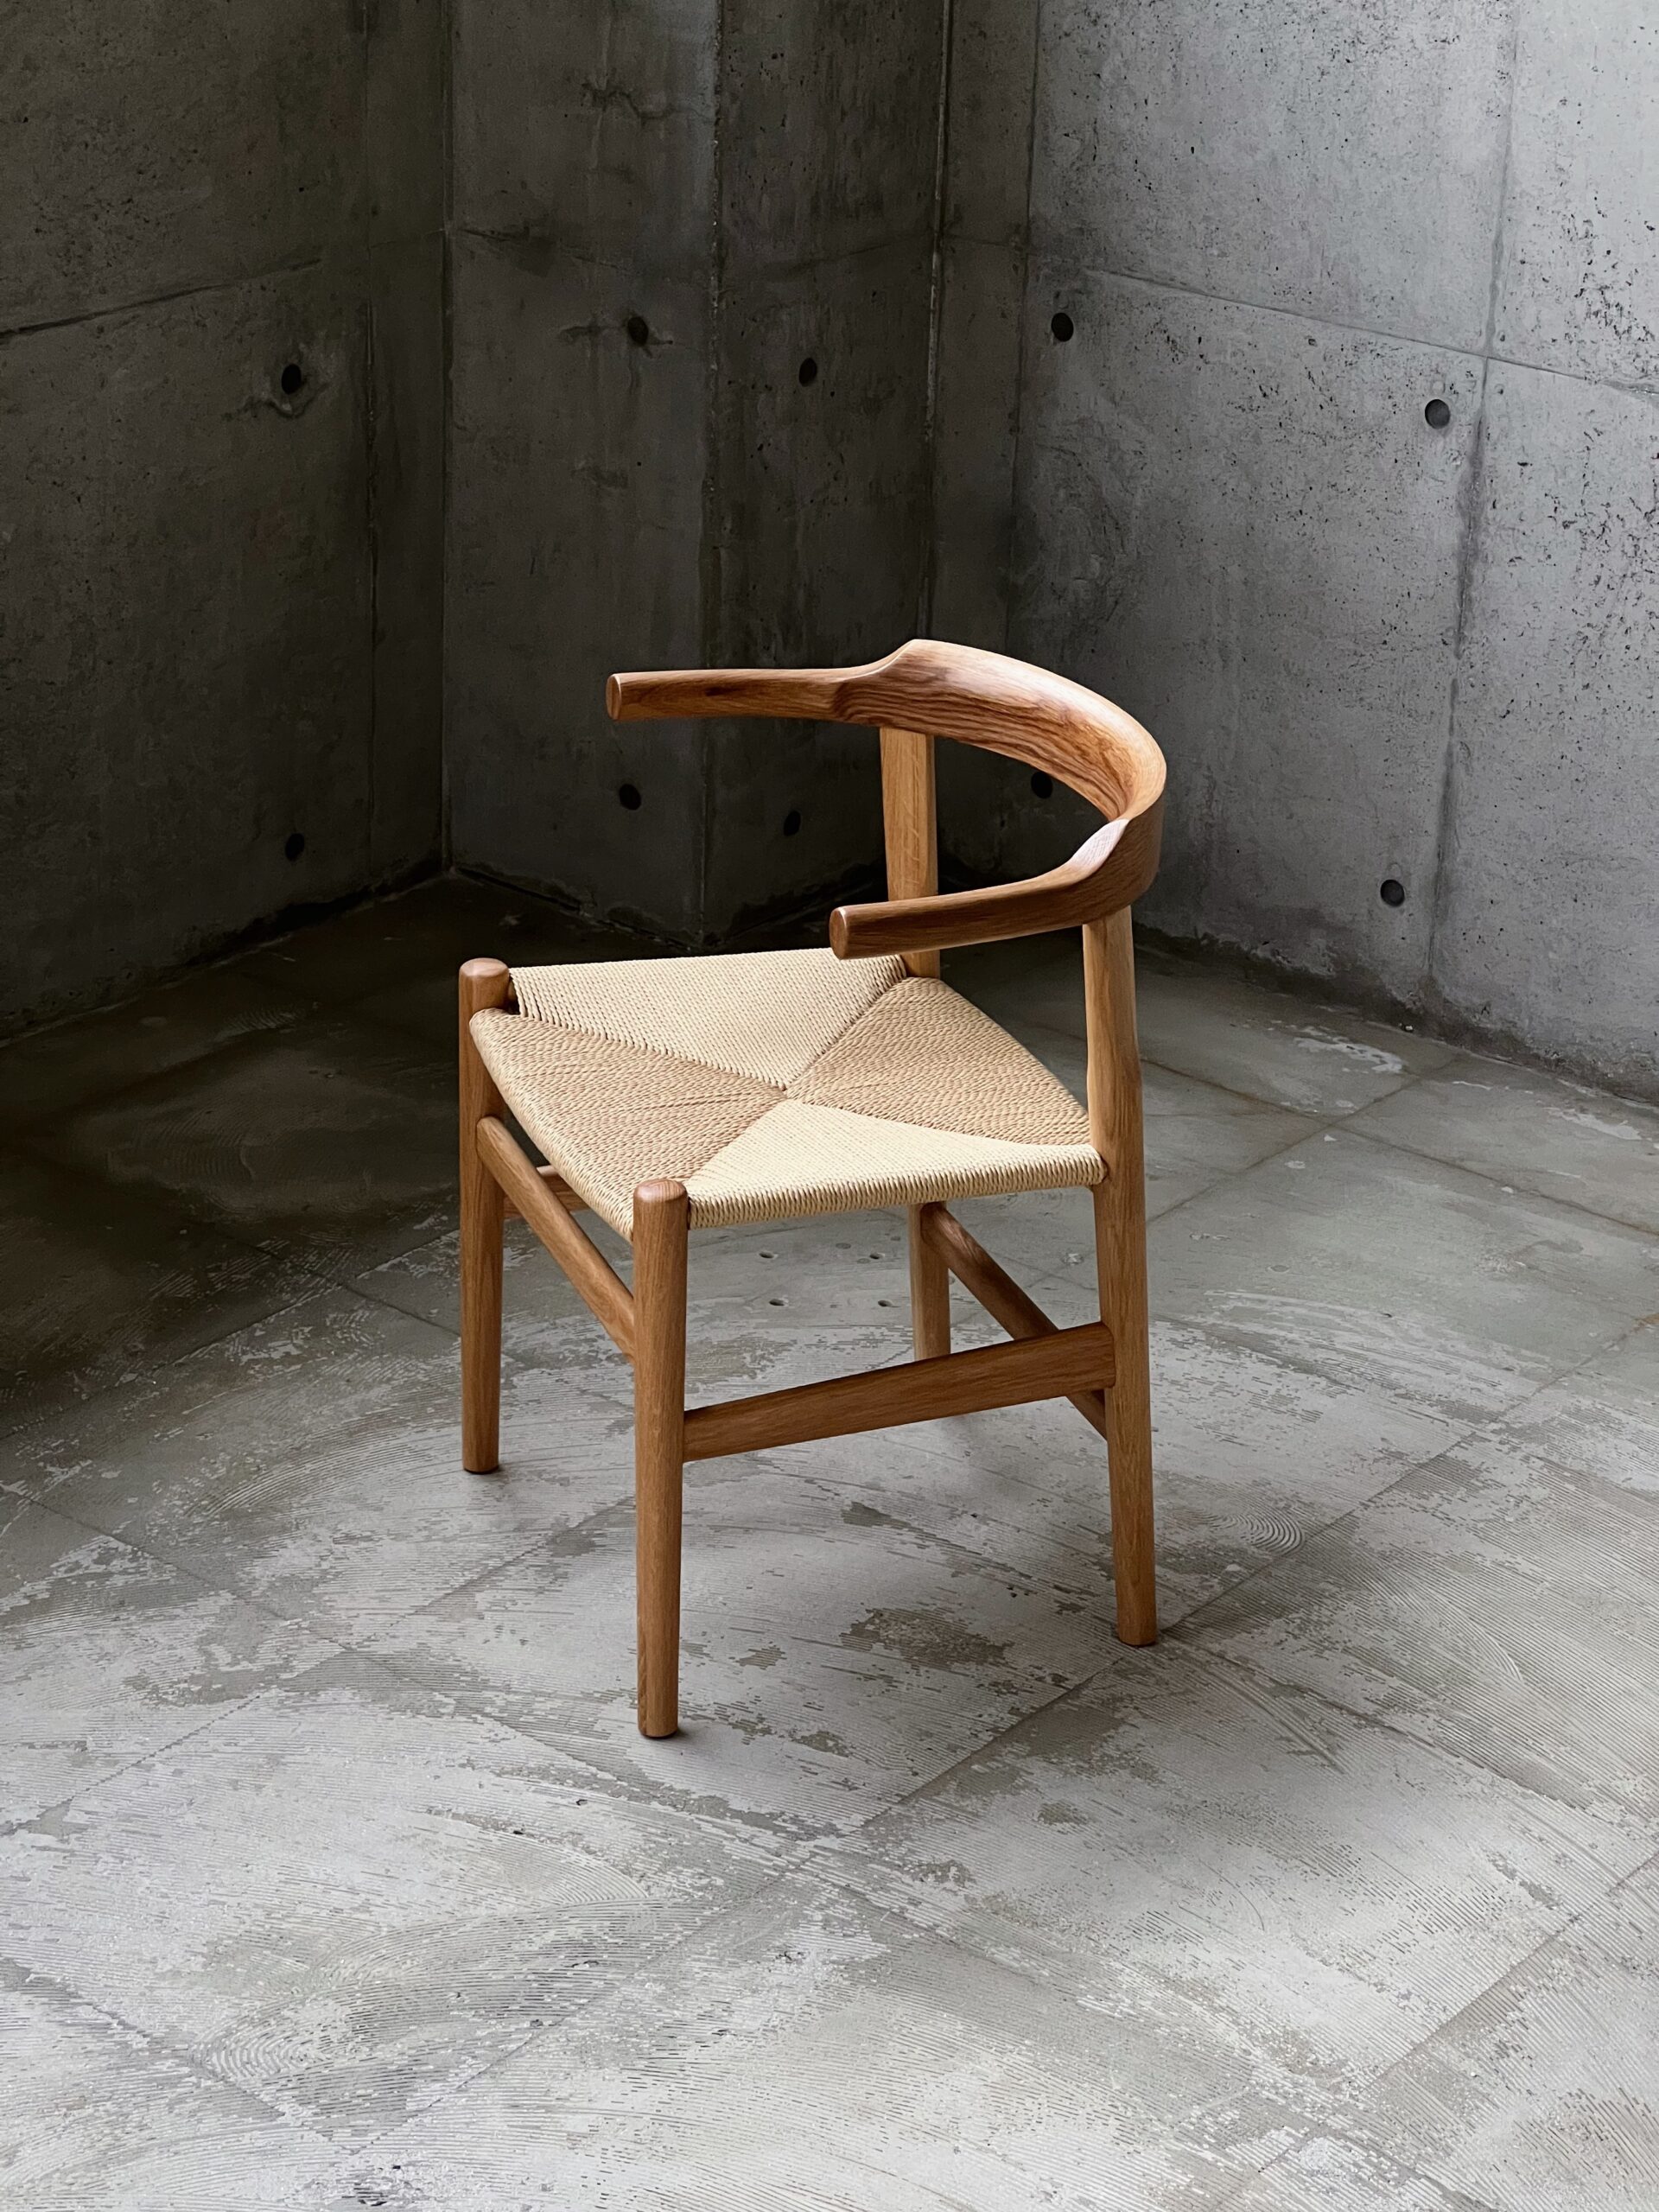 500脚以上椅子をデザインした、
Hans J.Wegnerが最後に残した作品